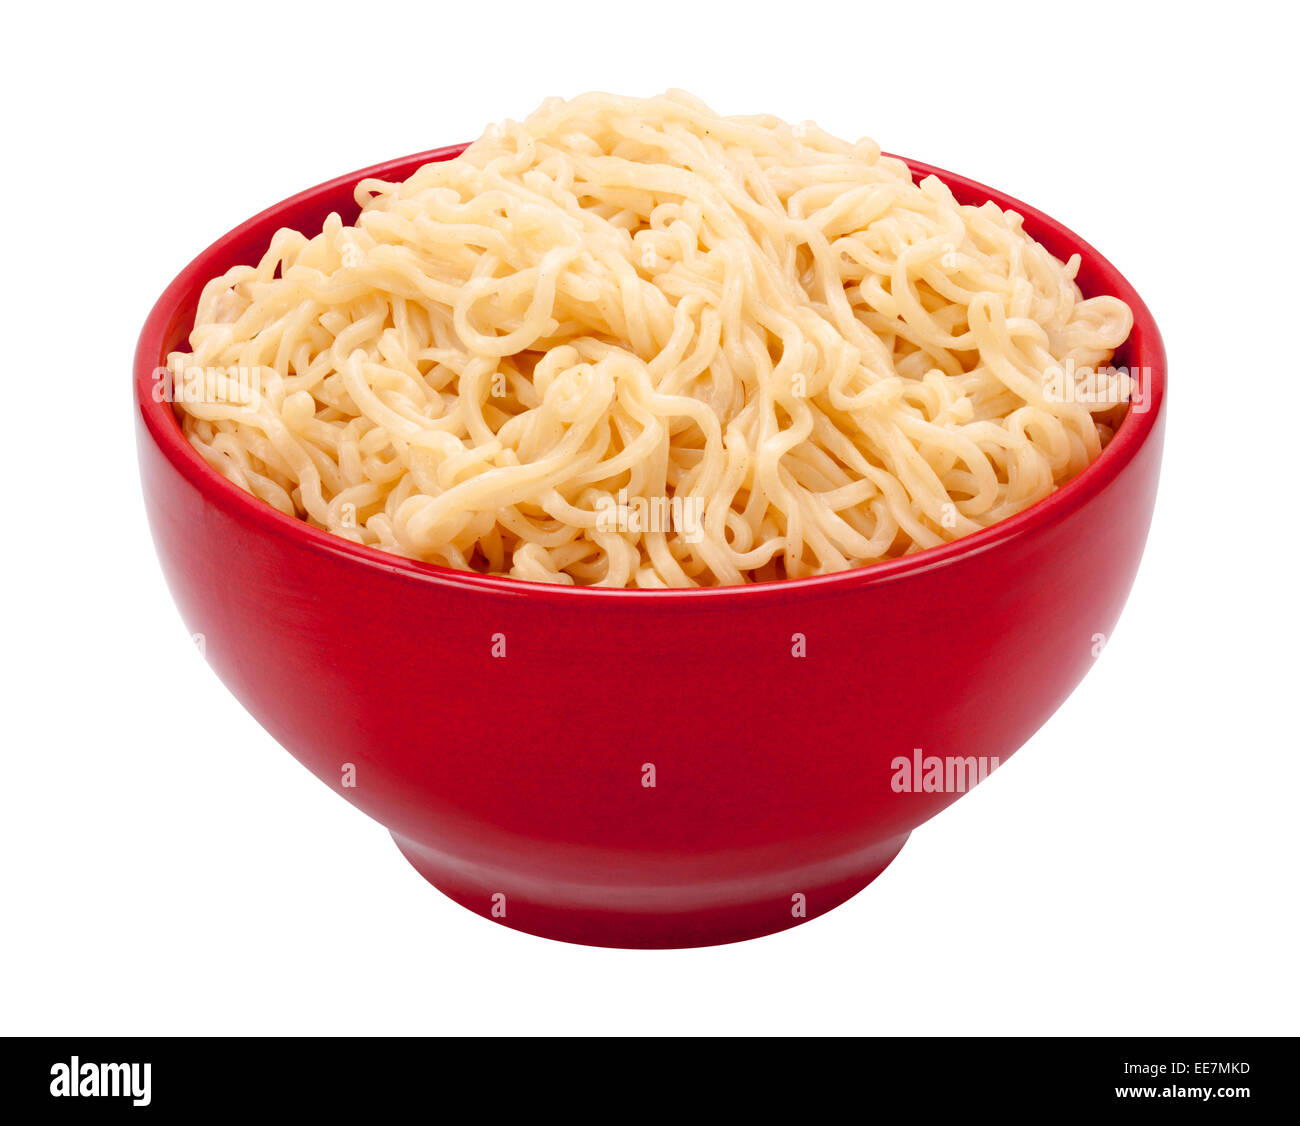 Spaghetti Ramen in un recipiente rosso. Isolato su bianco, l'immagine è in pieno la messa a fuoco, dalla parte anteriore a quella posteriore. Foto Stock